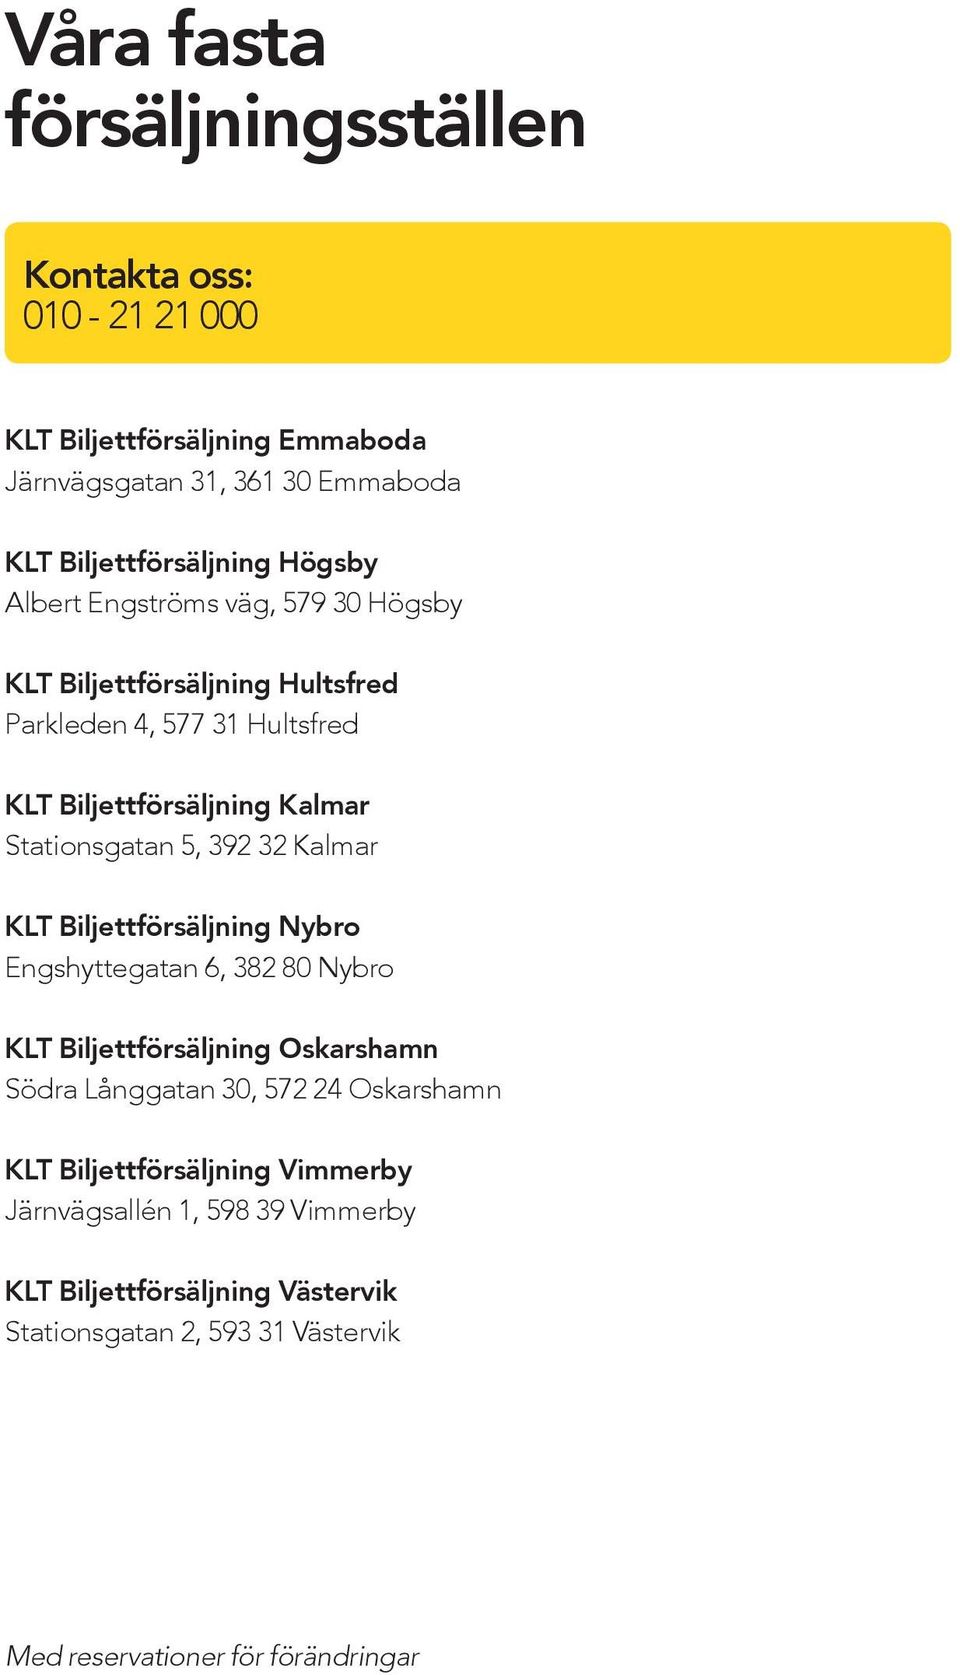 392 32 Kalmar KLT Biljettförsäljning Nybro Engshyttegatan 6, 382 80 Nybro KLT Biljettförsäljning Oskarshamn Södra Långgatan 30, 572 24 Oskarshamn KLT